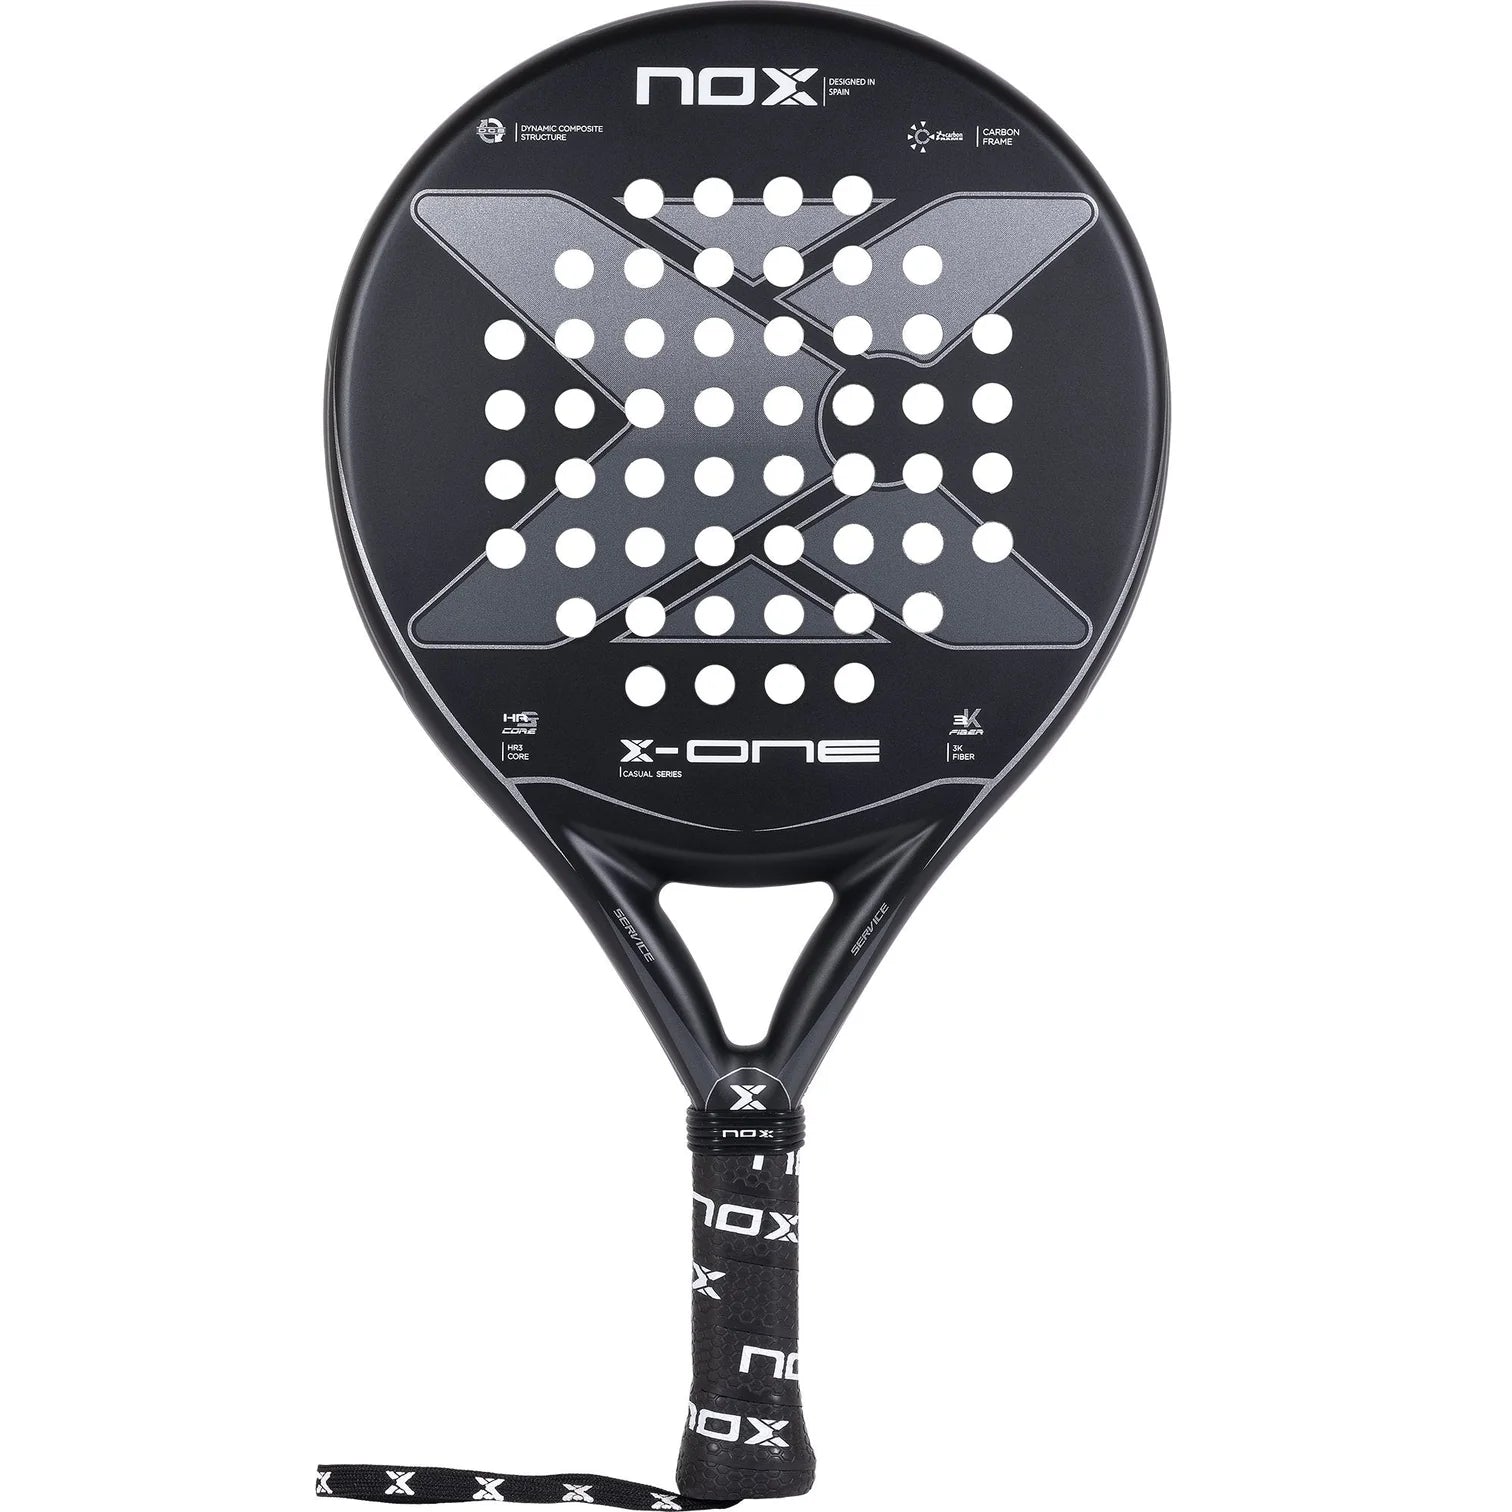 NOX PADEL RACKET - Round Shape in color black/grey.